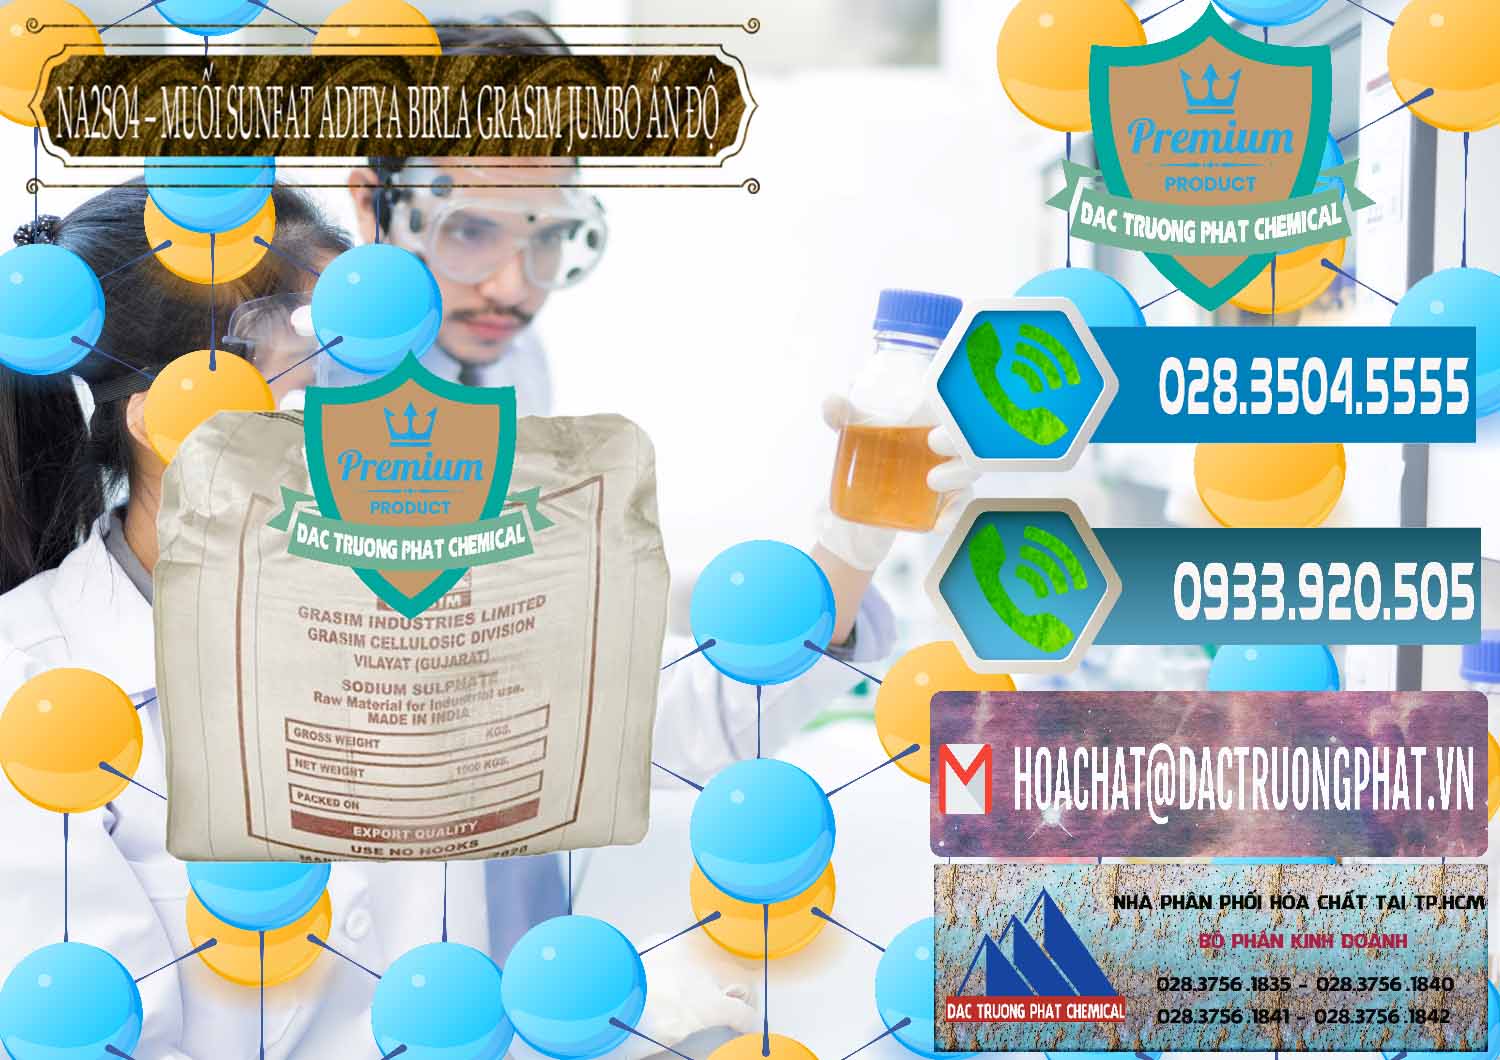 Nơi chuyên nhập khẩu & bán Sodium Sulphate - Muối Sunfat Na2SO4 Jumbo Bành Aditya Birla Grasim Ấn Độ India - 0357 - Kinh doanh và phân phối hóa chất tại TP.HCM - congtyhoachat.net